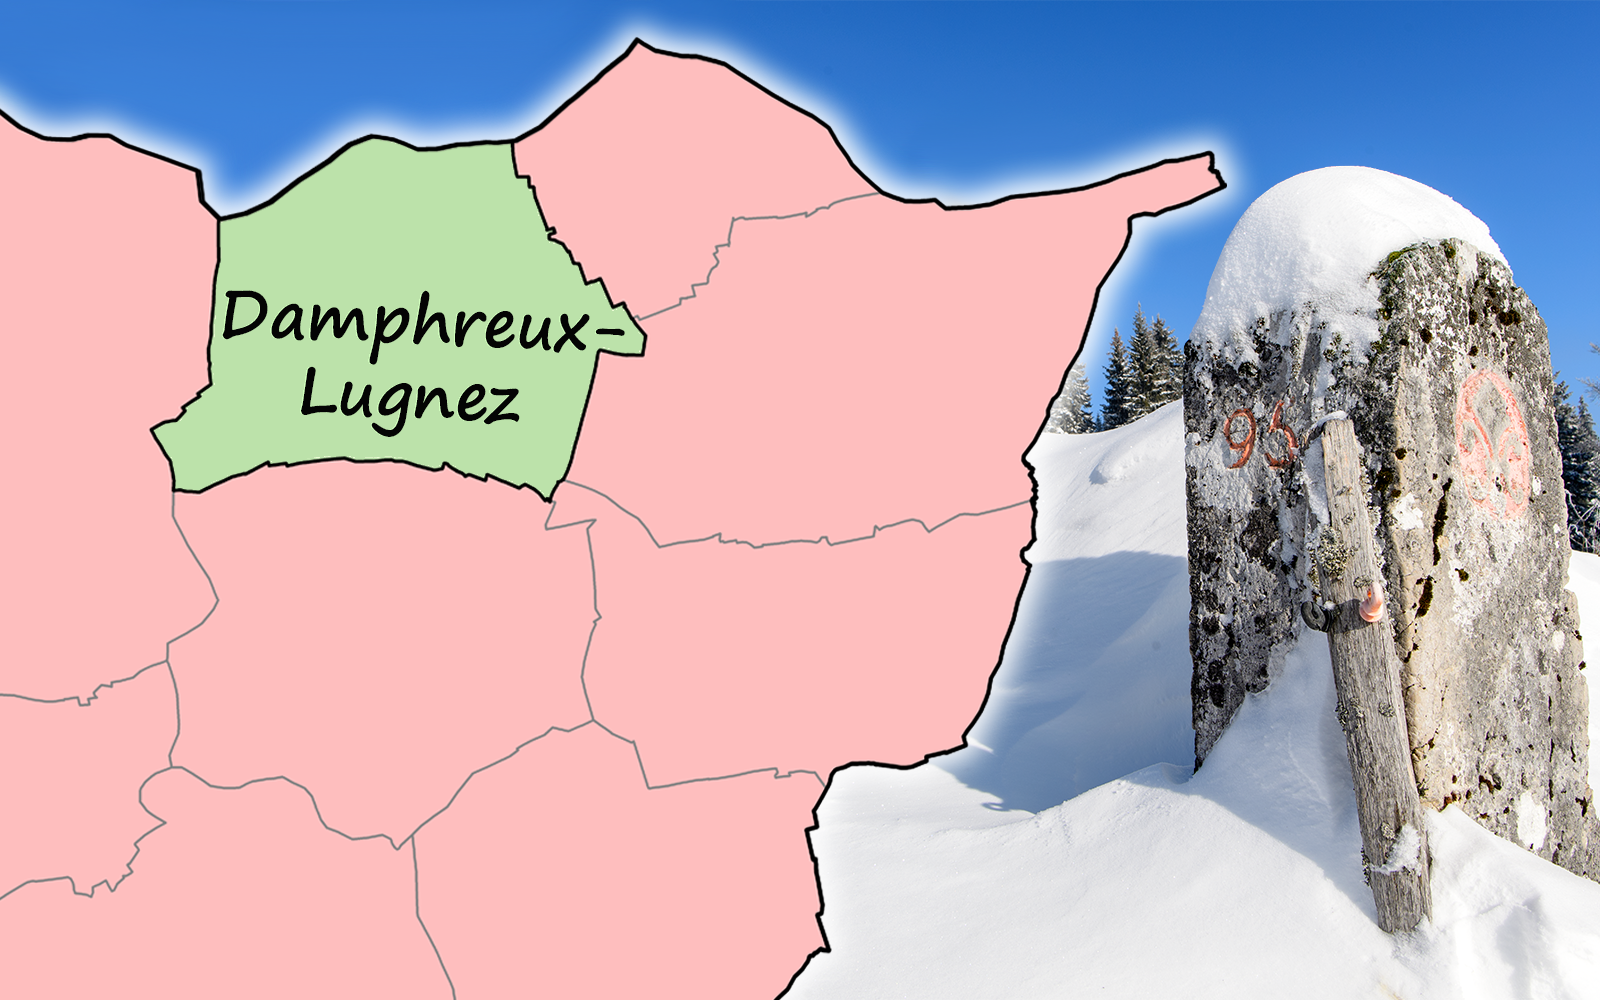 L'image montre, à droite, une borne dans un paysage enneigé. Sur la gauche, les limites communales dans la partie nord du canton du Jura, dans la zone frontalière française, avec le nom de la commune 'Damphreux-Lugnez'. 